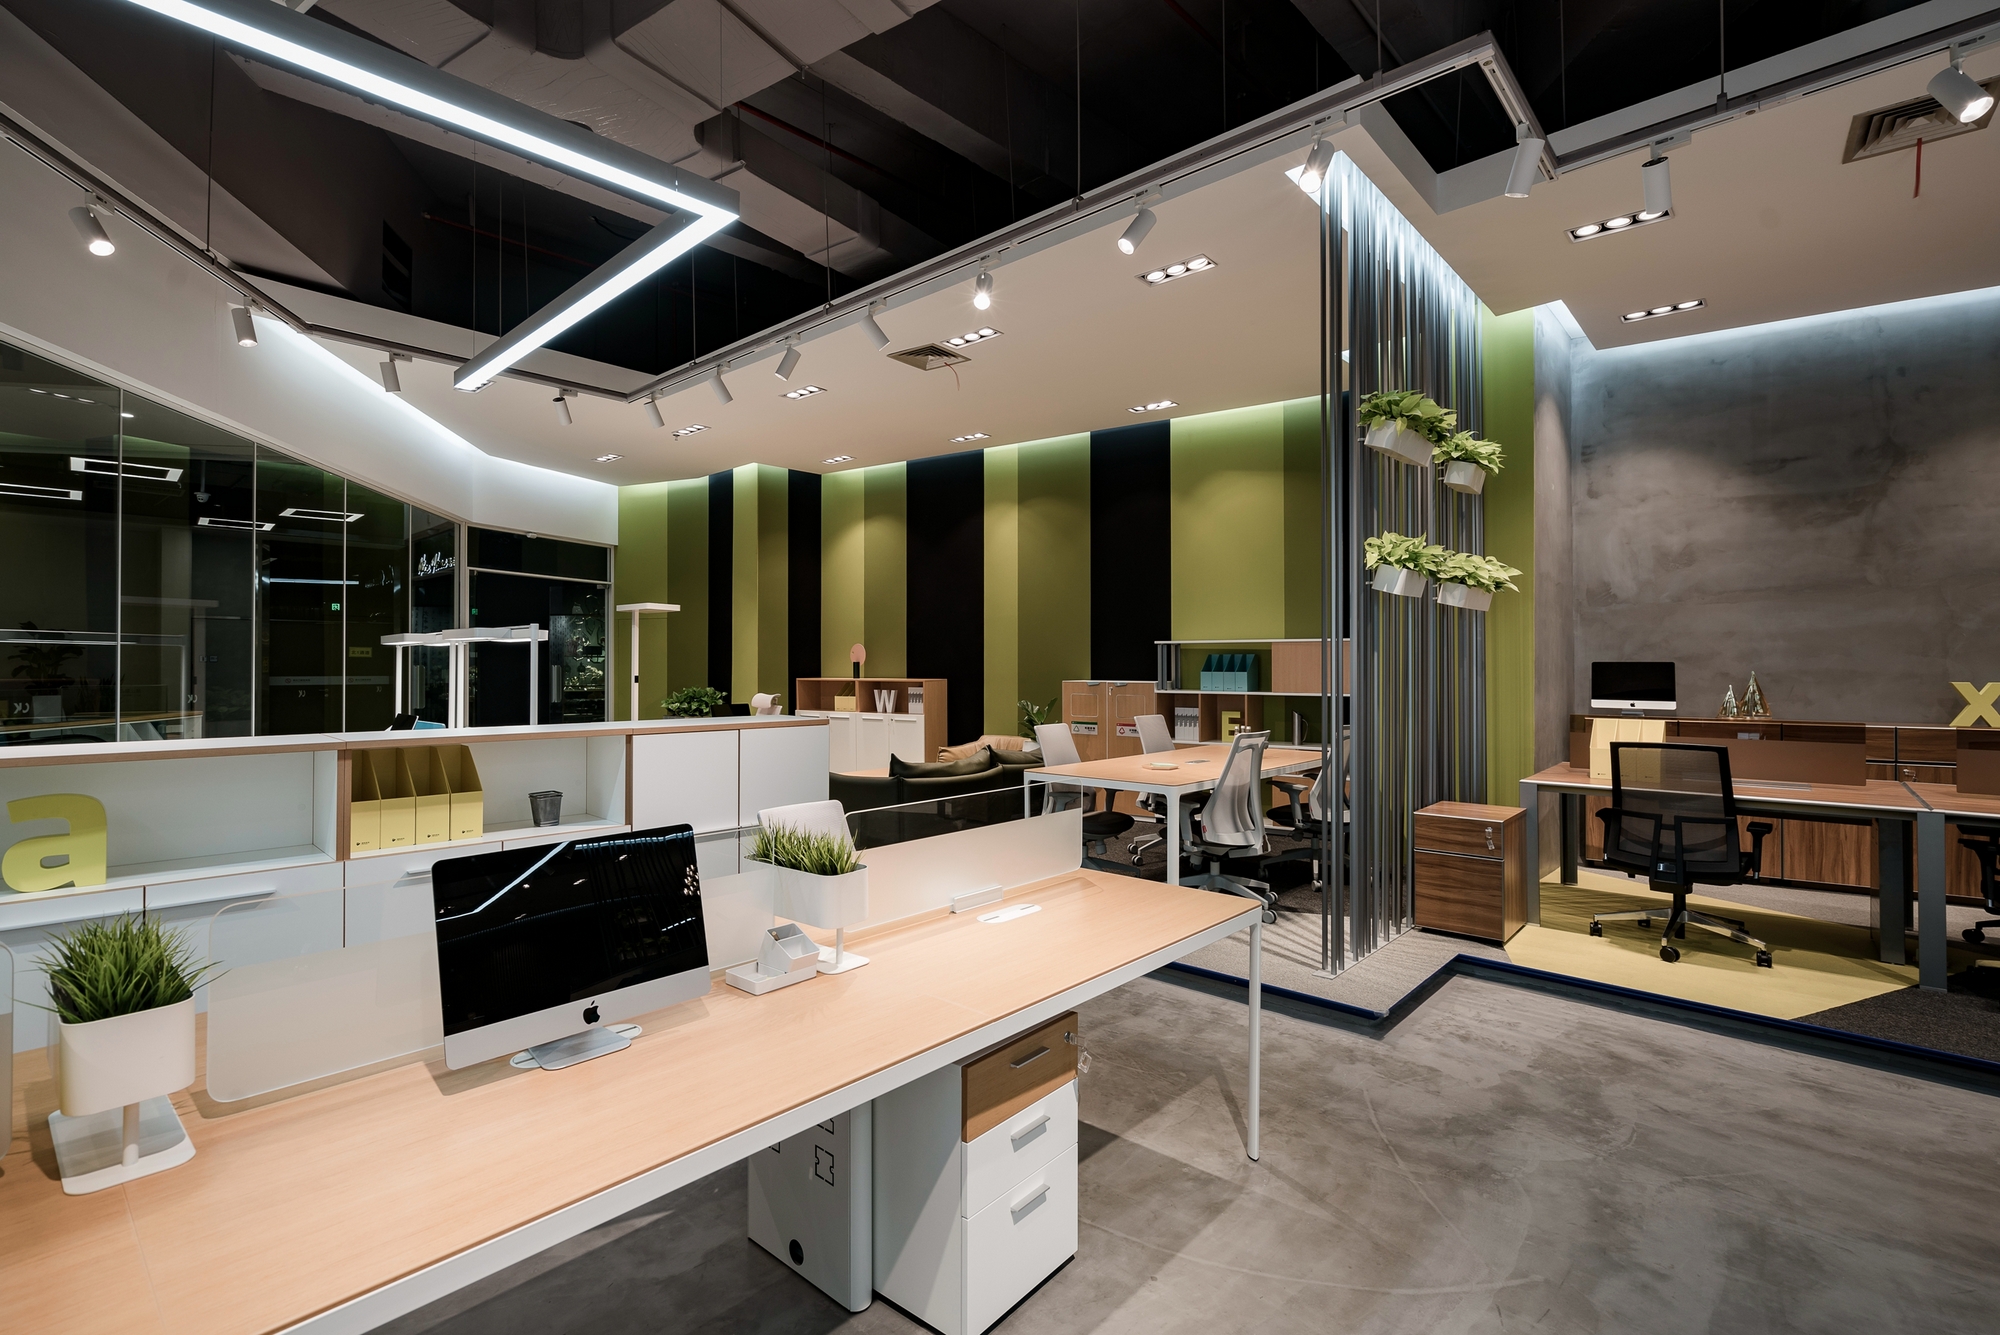 图片[10]|CK办公家具灵感展厅和办公室-深圳|ART-Arrakis | 建筑室内设计的创新与灵感